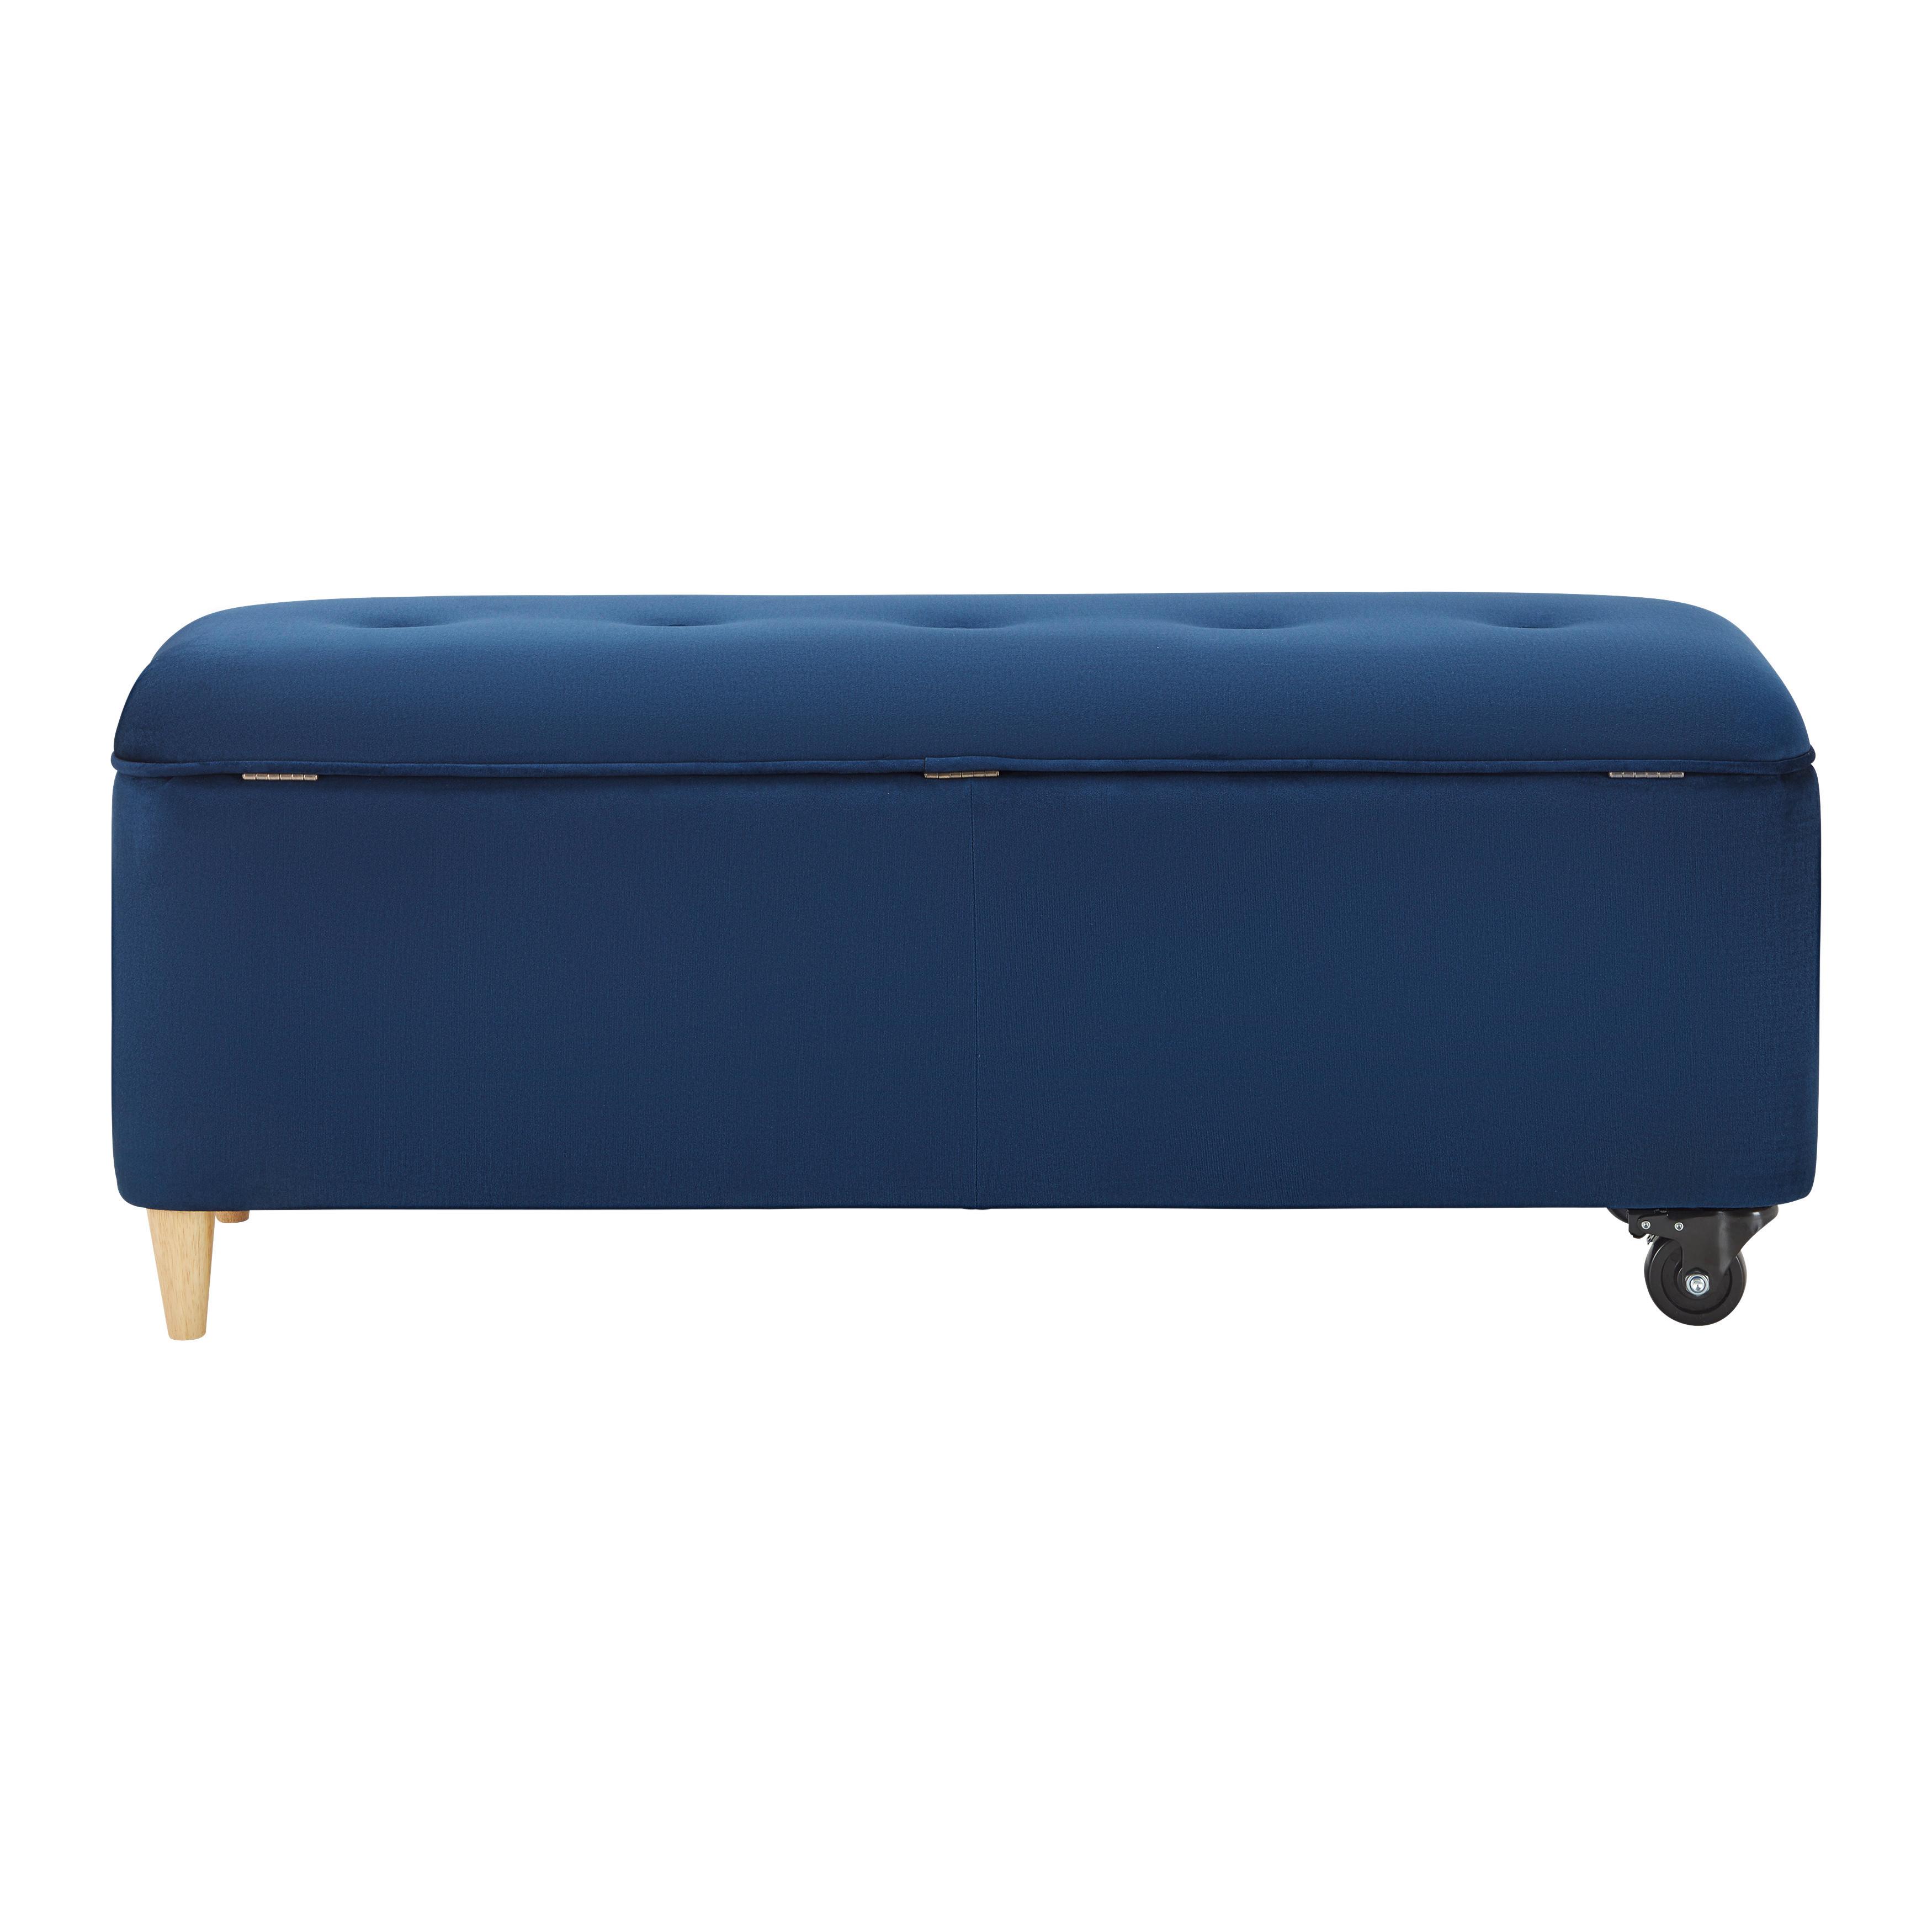 Sitzbank mit Stauraum, blau, "Ella", Samt - Blau/Schwarz, MODERN, Holz/Textil (124/48/43cm) - Bessagi Home